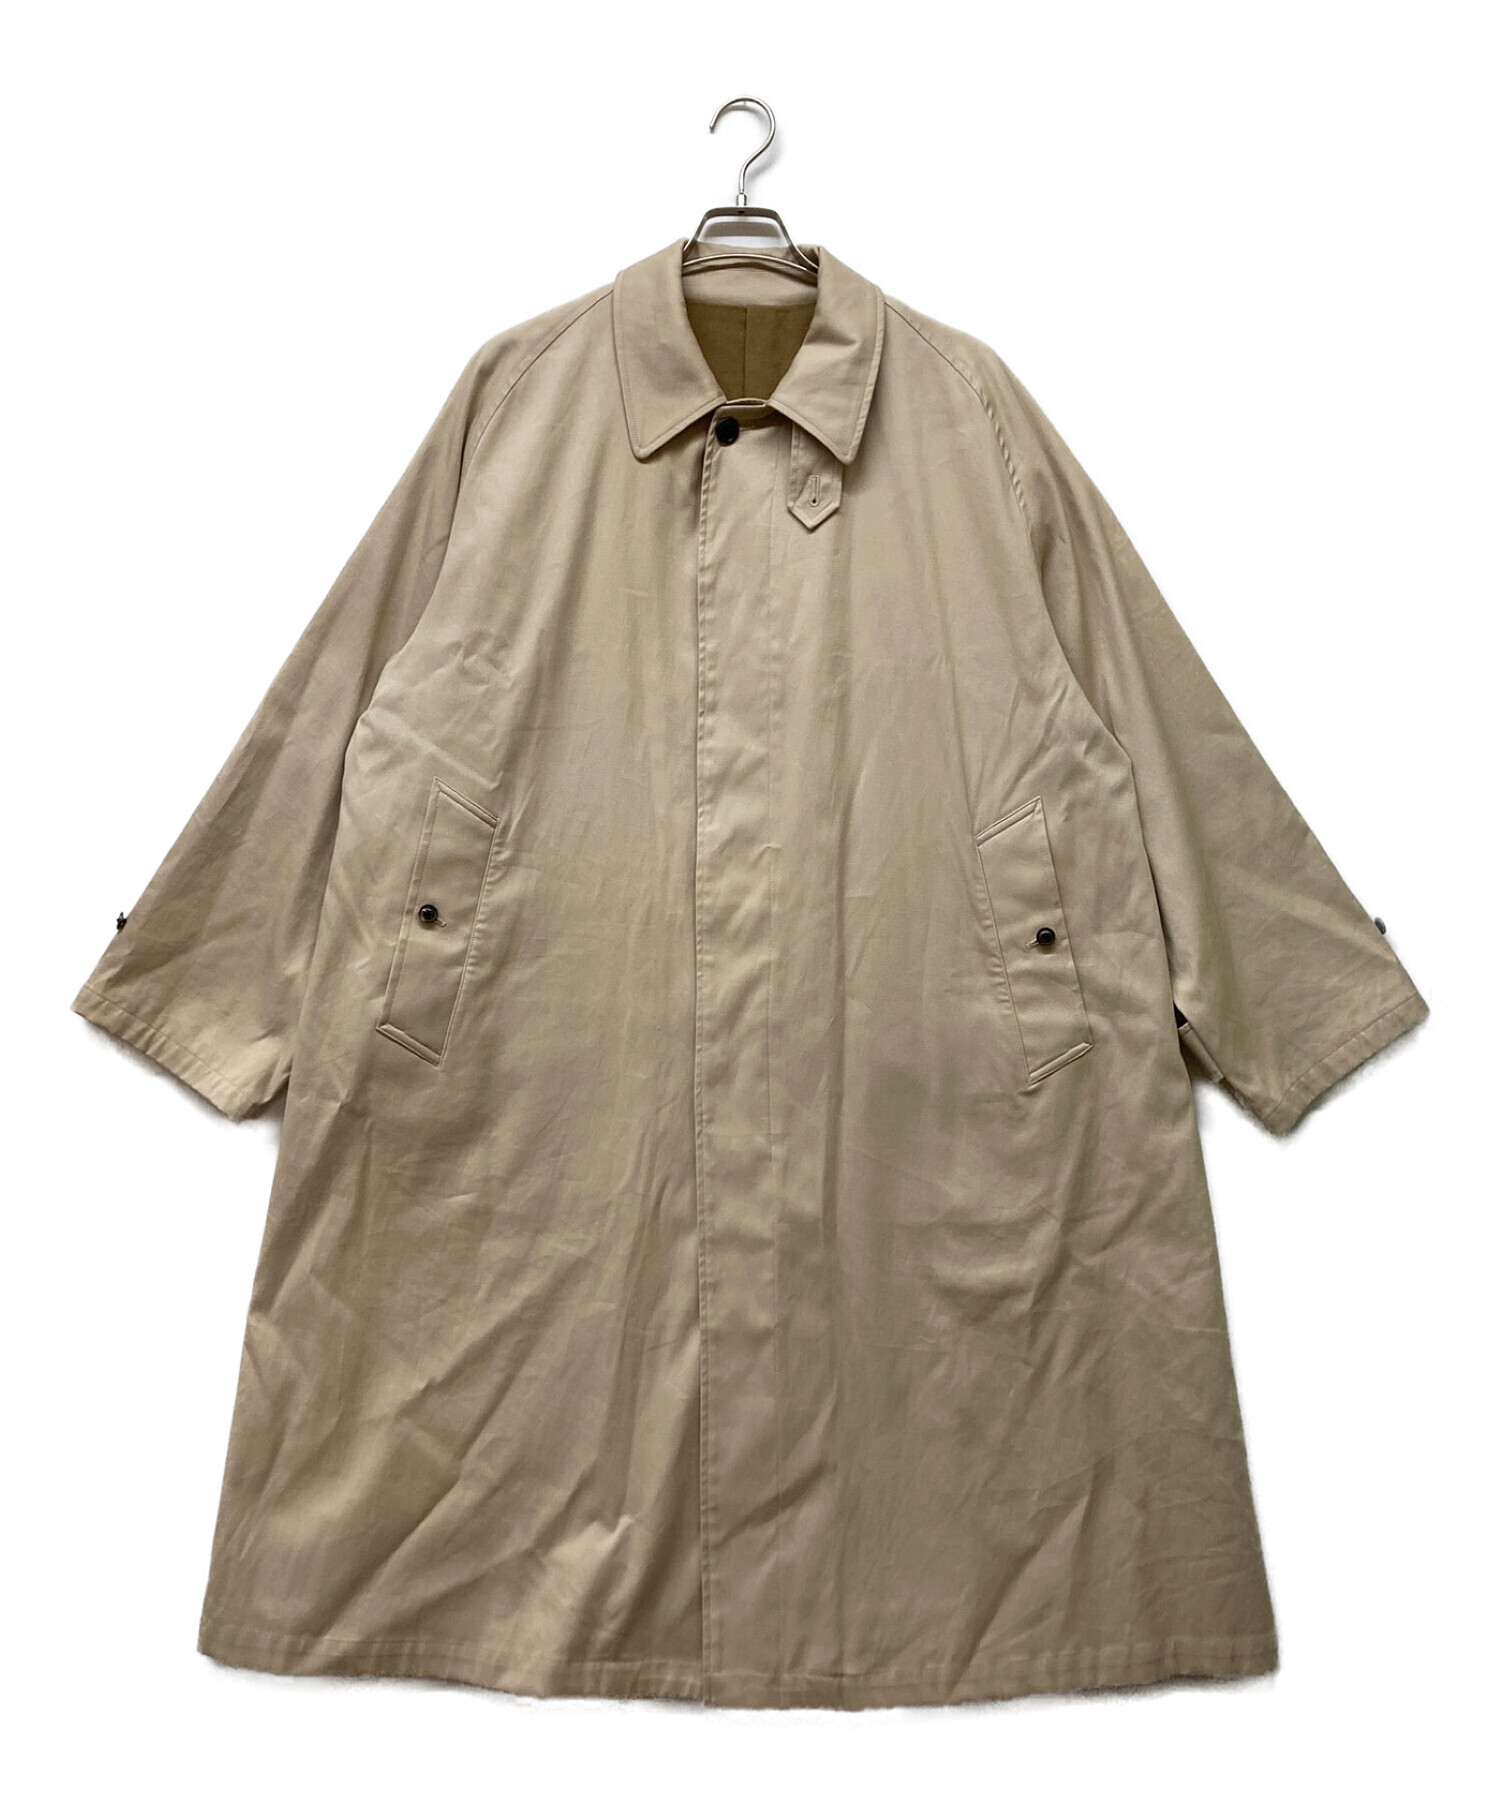 ステンカラーコートURU Balmaccan coat (typeA) - mirabellor.com